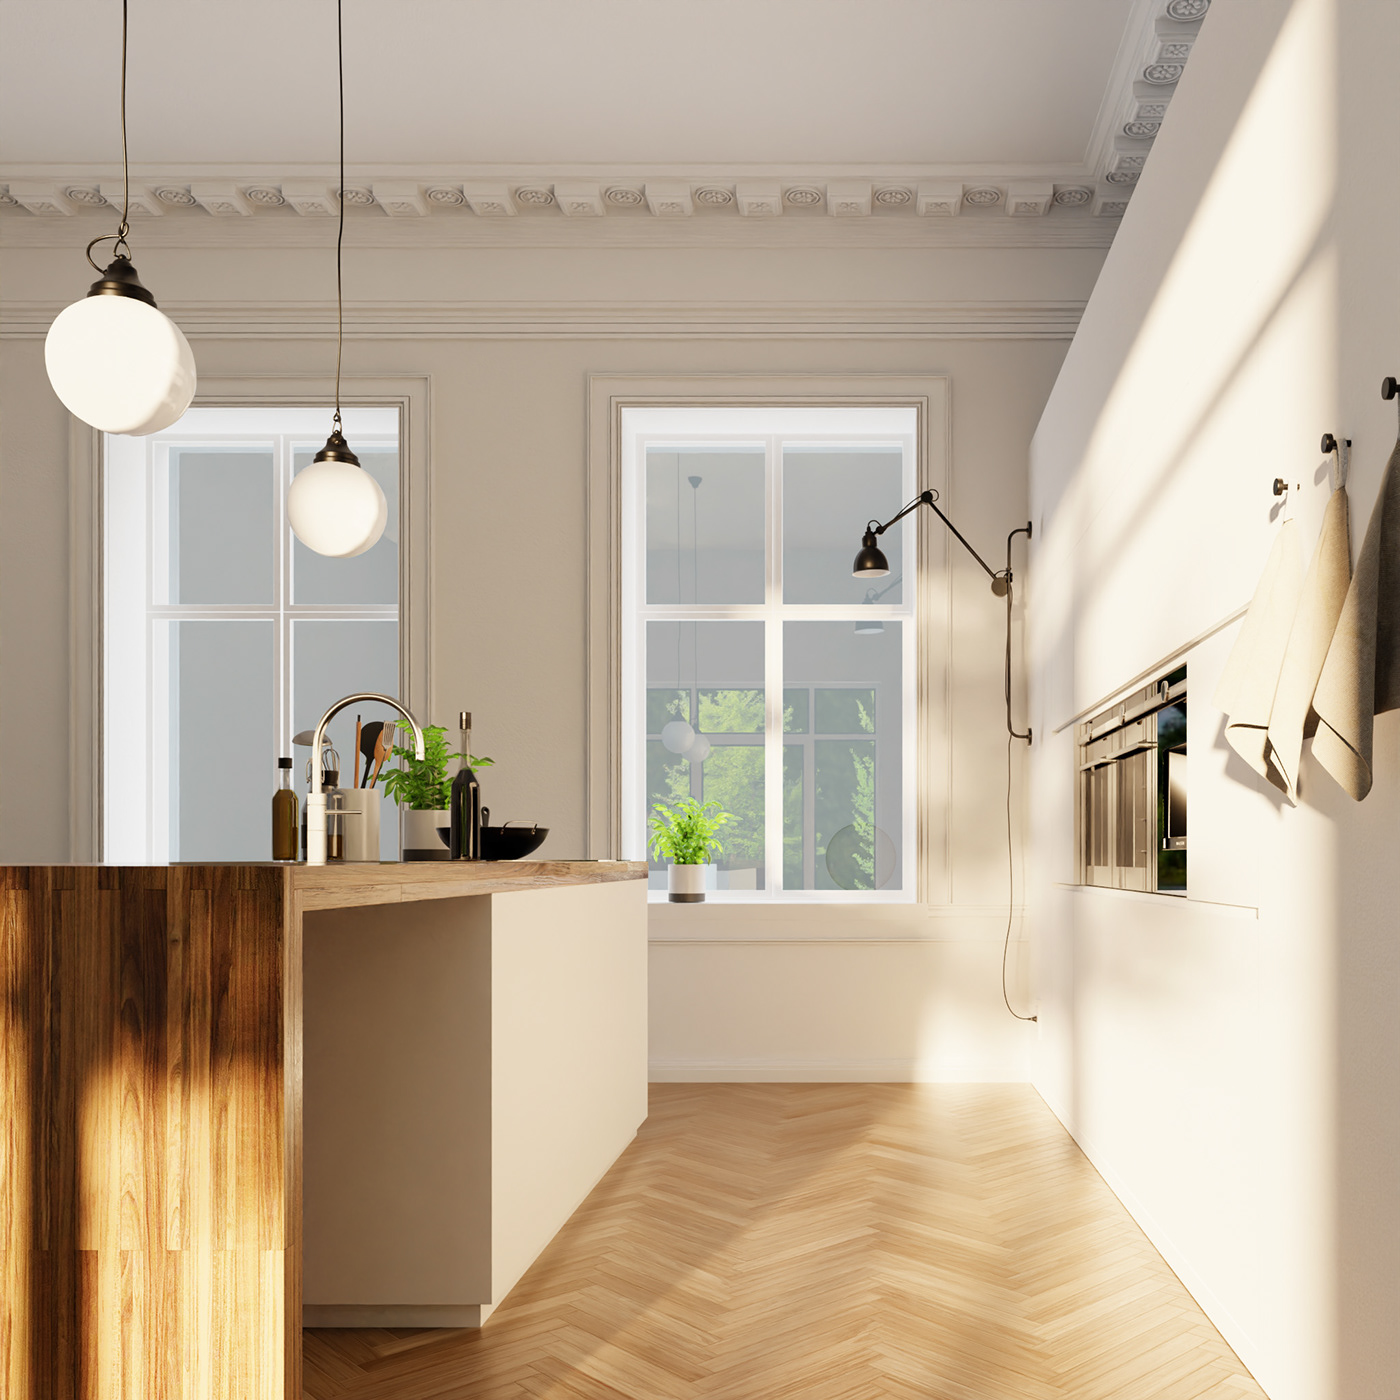 3D architecture Archivz blender CGI interior design  kitchen Render sunset visualization